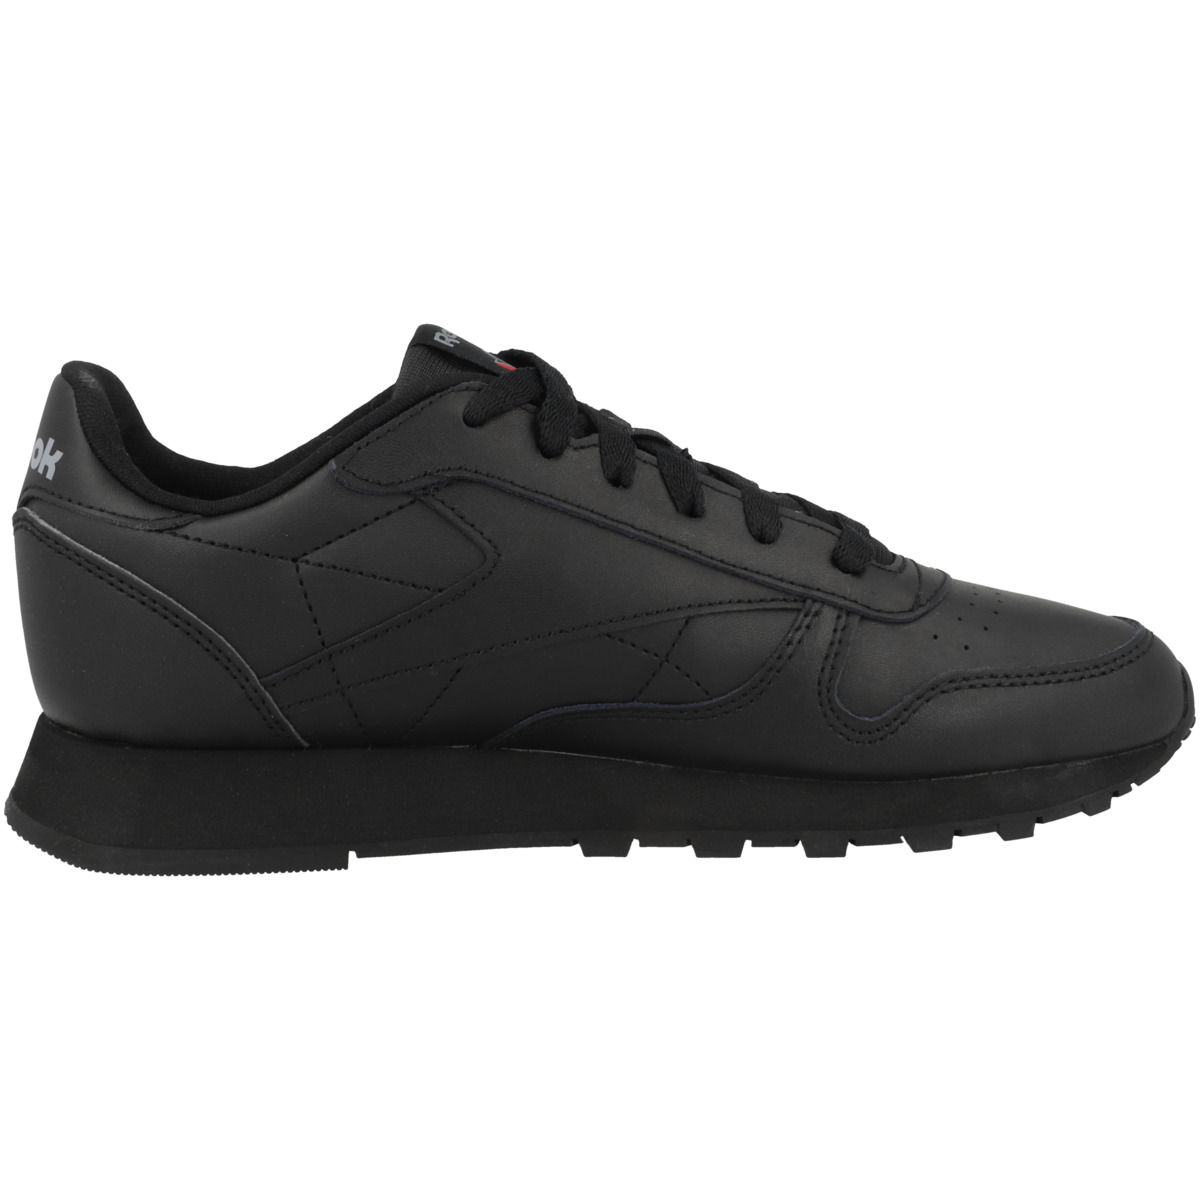 Reebok Classic Leather Sneaker schwarz